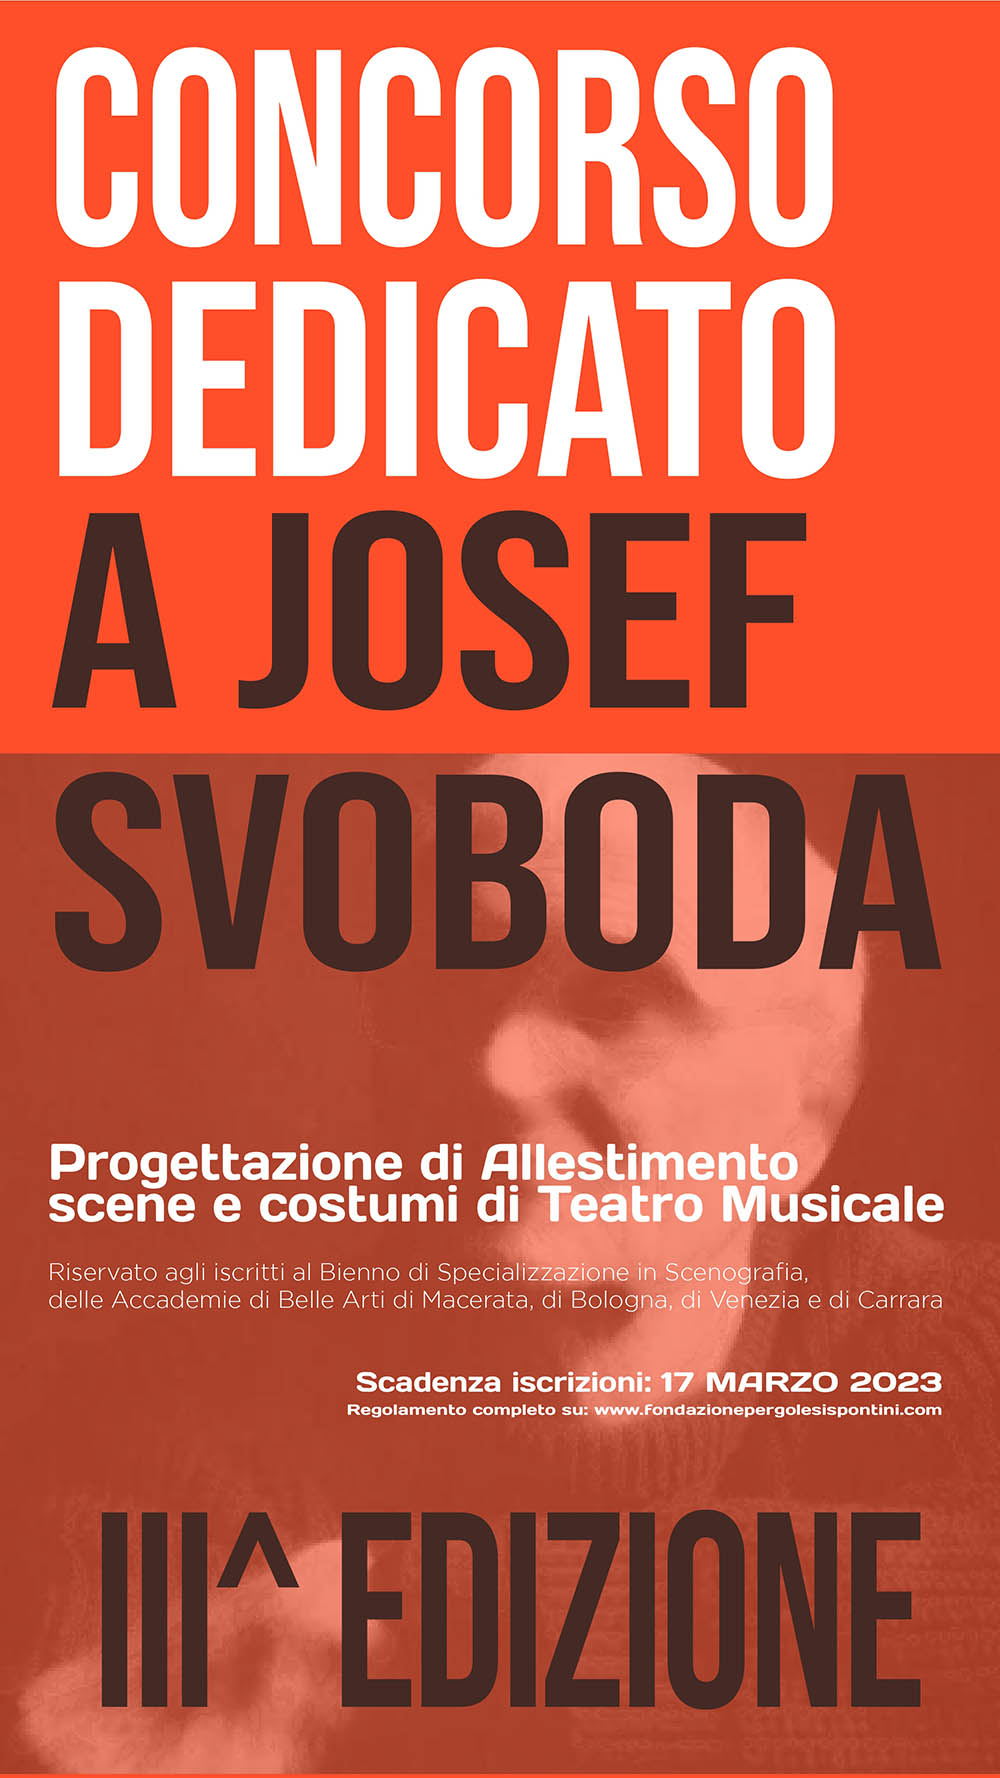 Bando del Concorso dedicato a Josef Svoboda III edizione per la Progettazione di allestimento scene e costumi di Teatro Musicale.